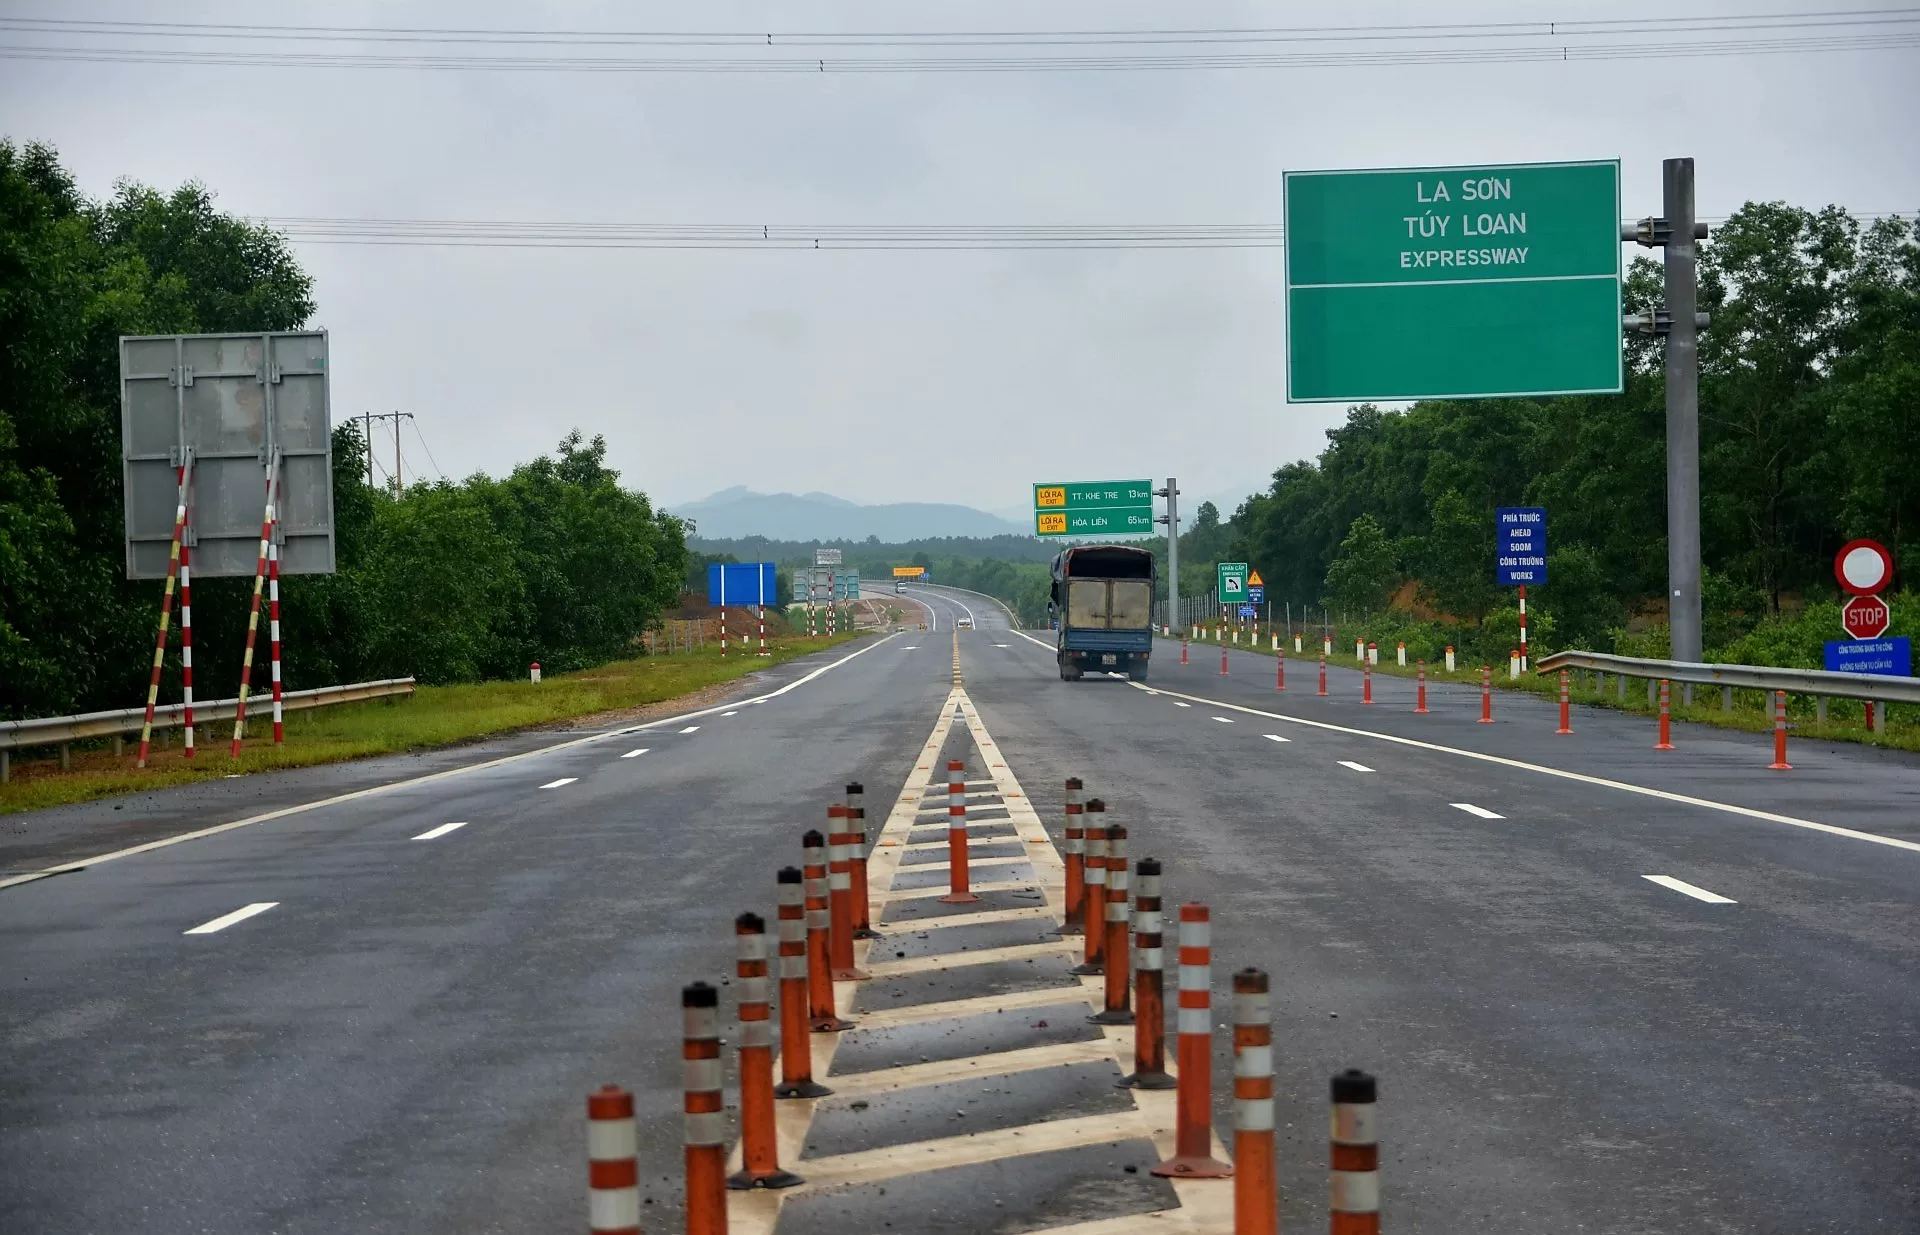 Kế hoạch xây dựng cao tốc La Sơn - Túy Loan và tầm nhìn chiến lược cho tương lai